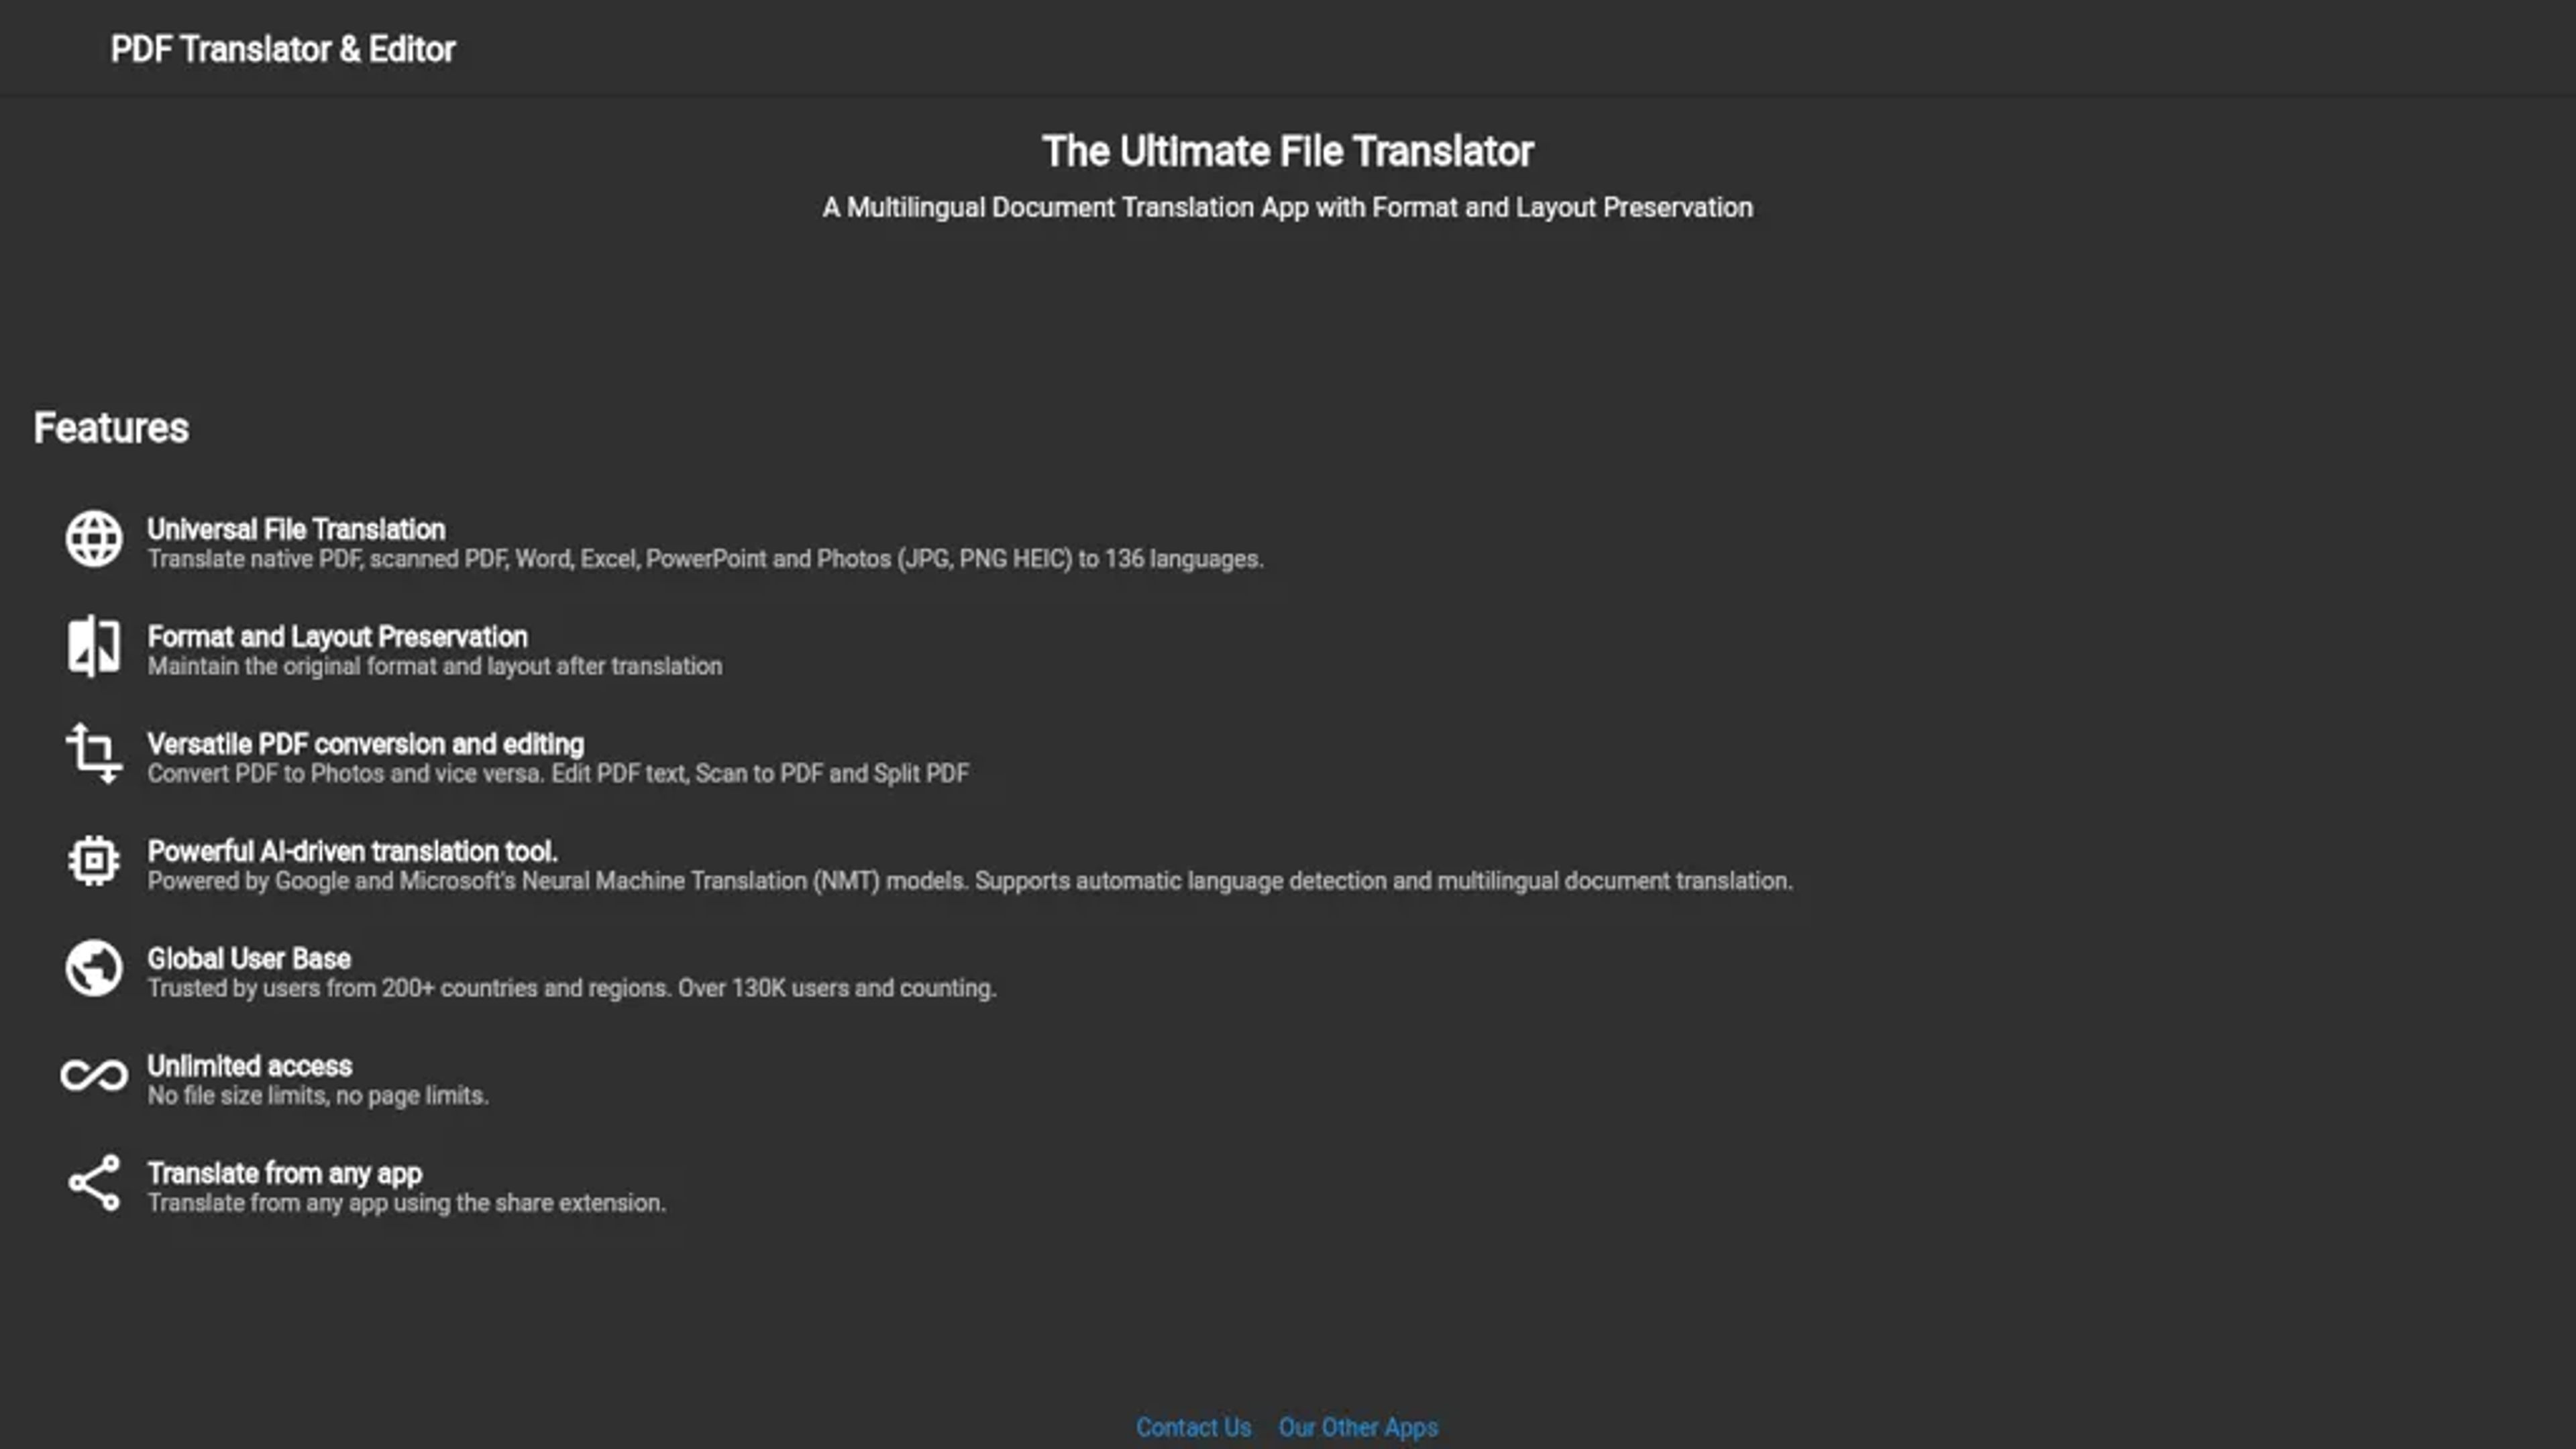 PDF Translator & Editor